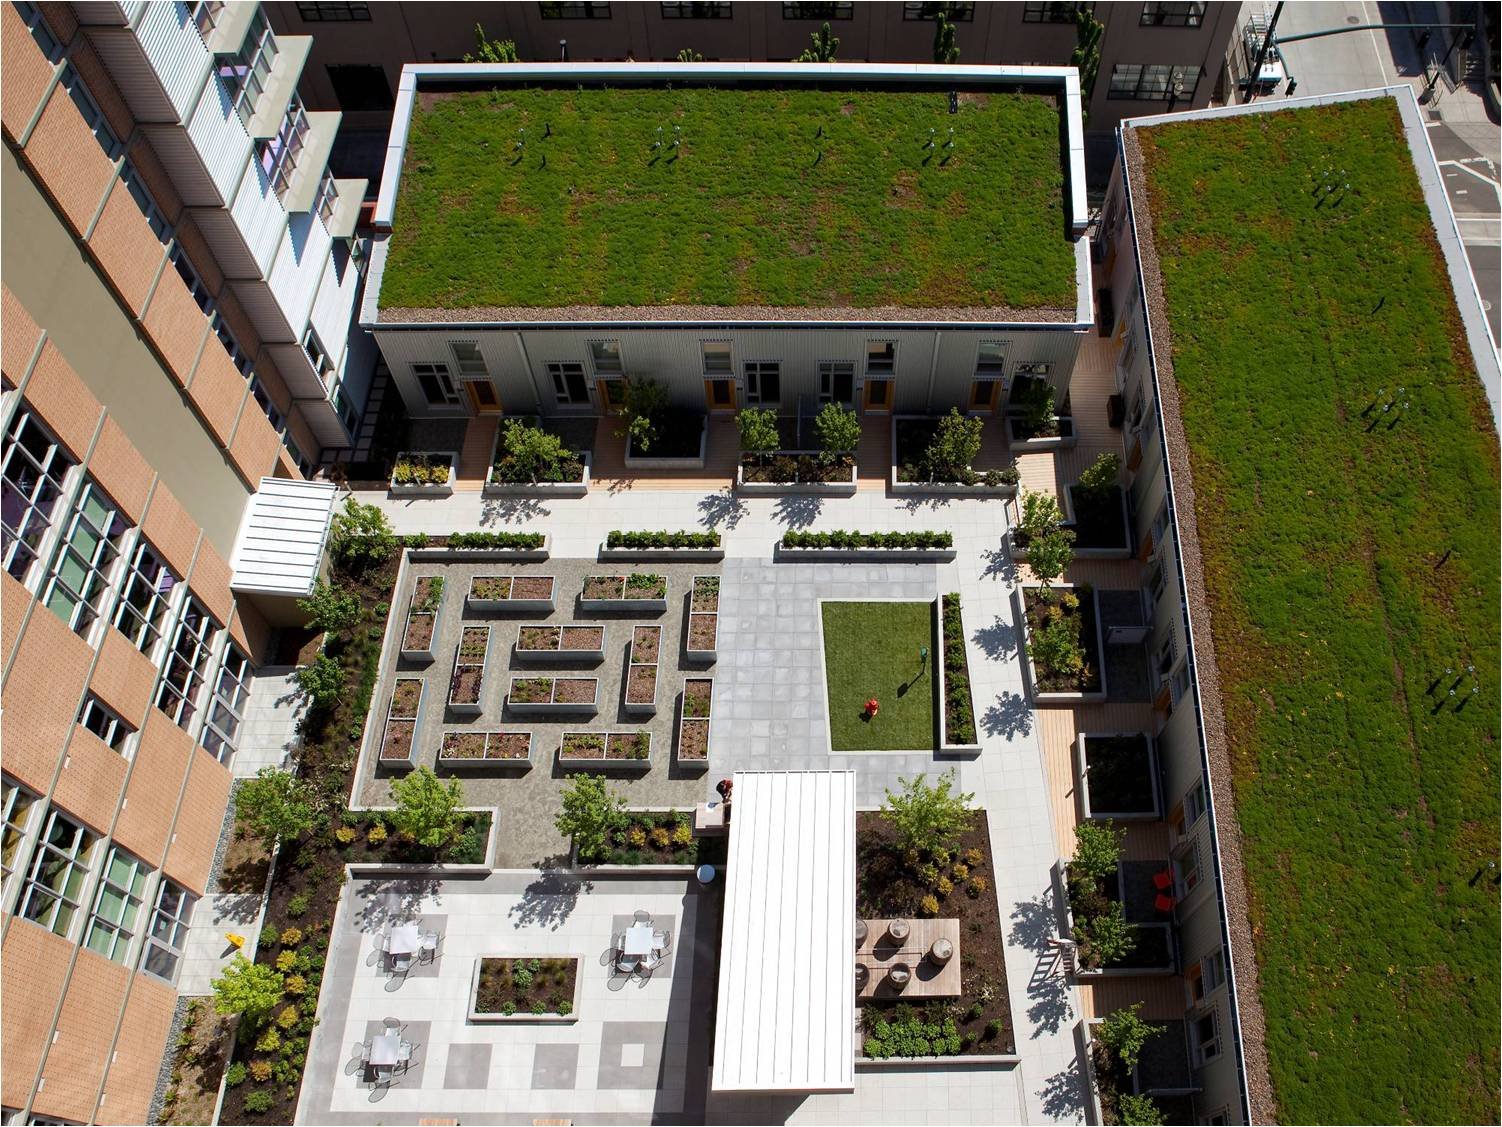 ASA Flat + Lofts Green Roof, Credit GGLO